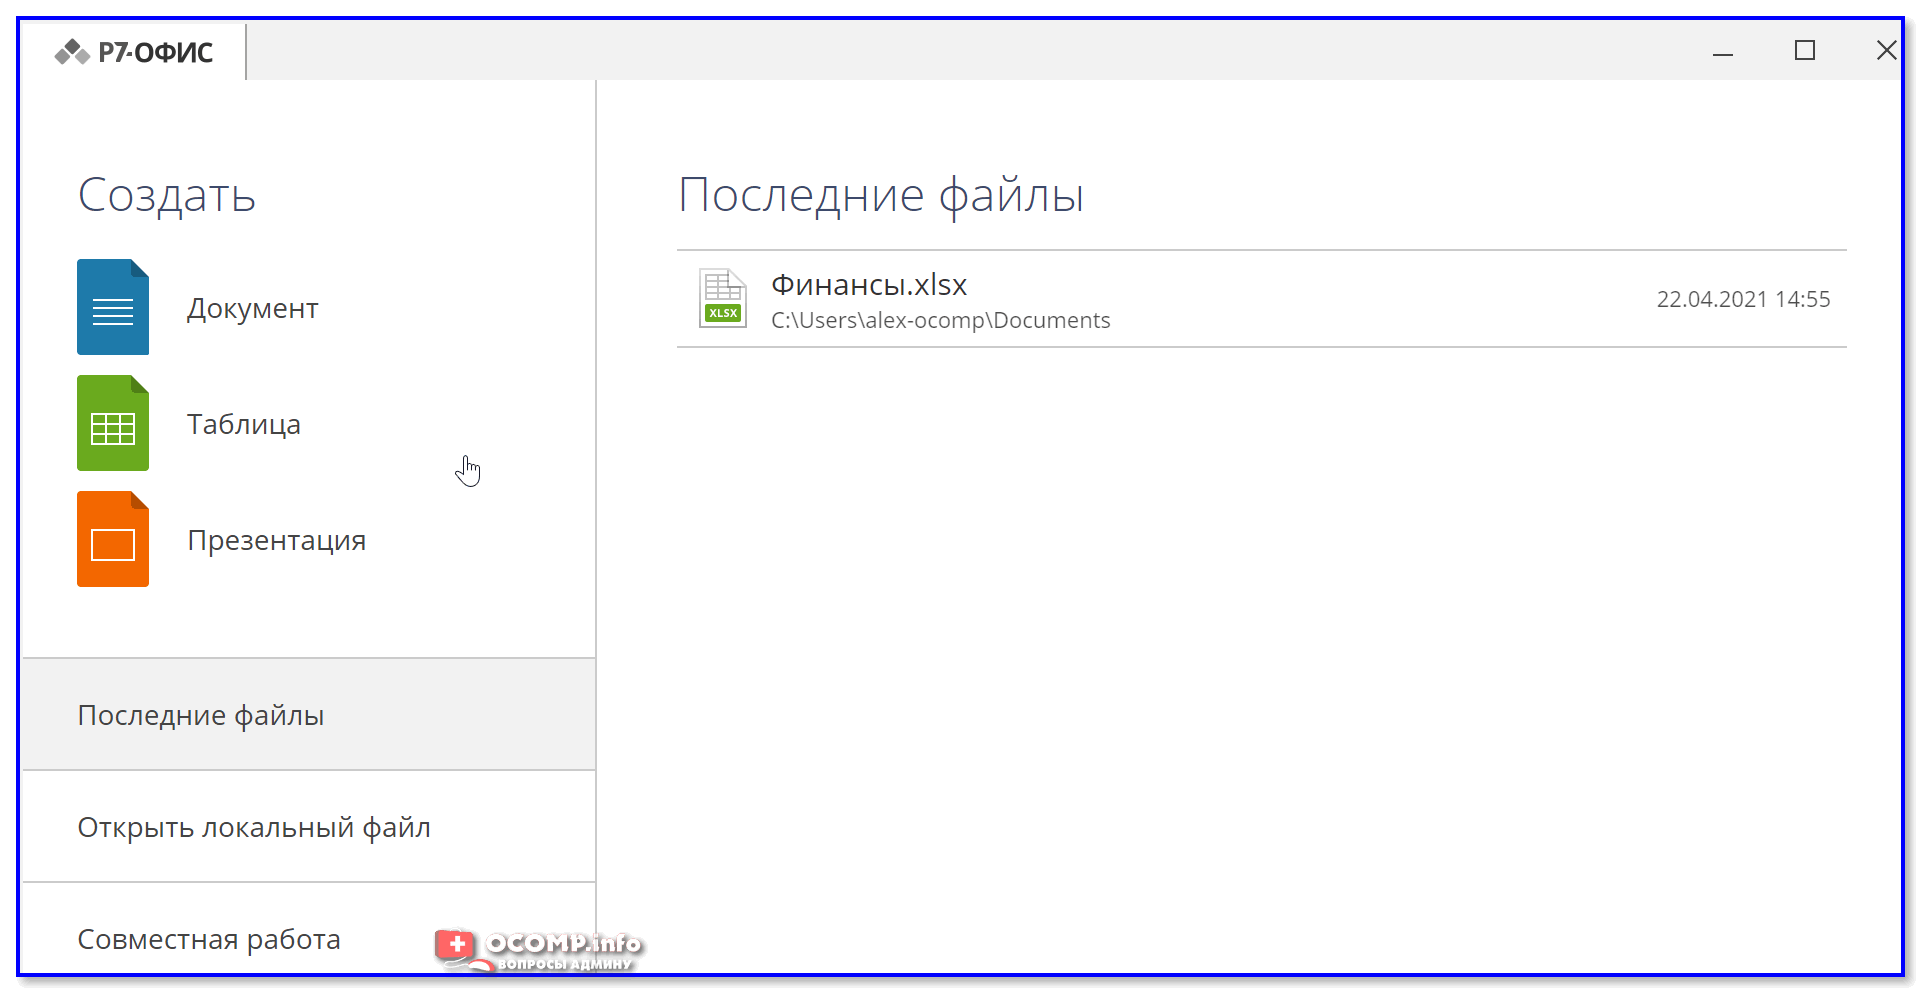 Аналог МС офис. Аналоги Microsoft Office. Российский аналог виндовс. Мой офис пакет российских офисных программ.